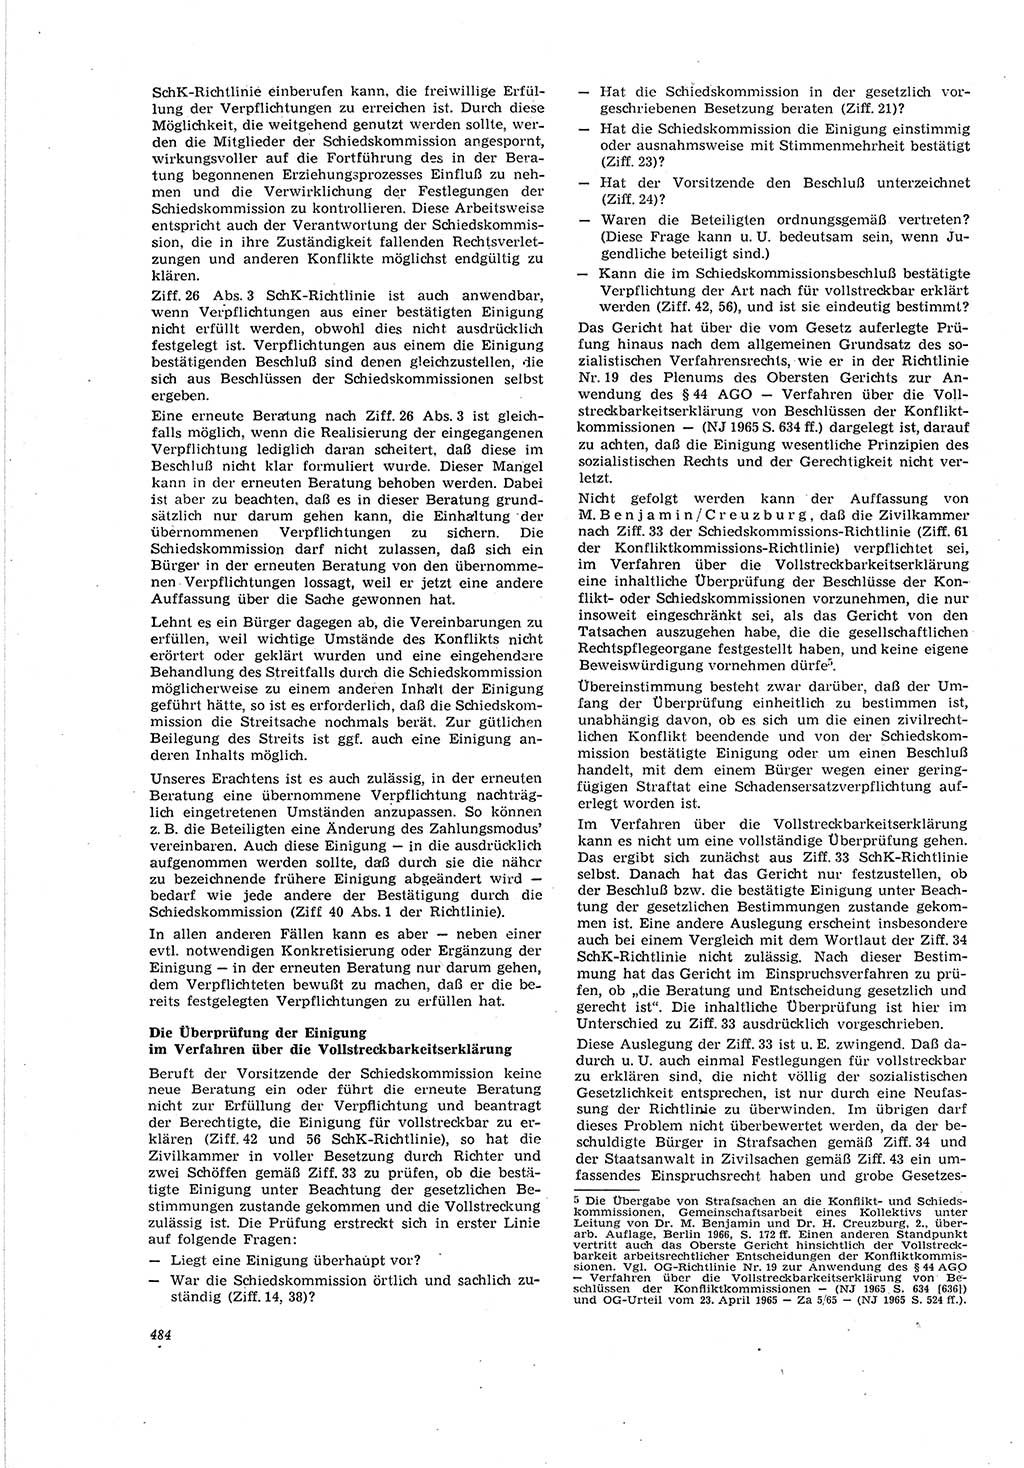 Neue Justiz (NJ), Zeitschrift für Recht und Rechtswissenschaft [Deutsche Demokratische Republik (DDR)], 20. Jahrgang 1966, Seite 484 (NJ DDR 1966, S. 484)